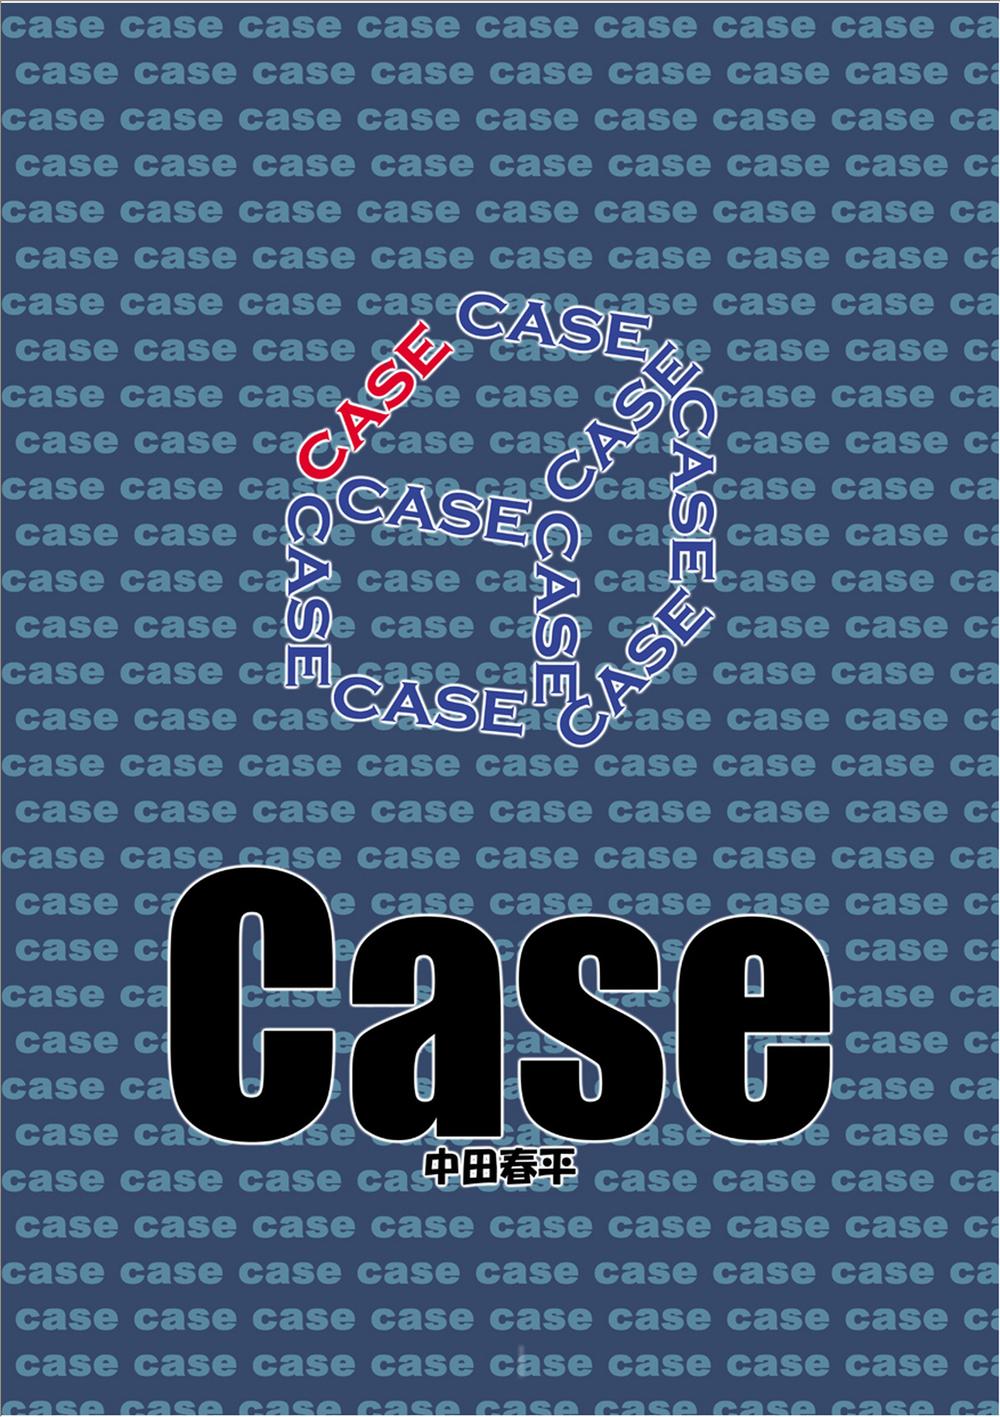 Case 2